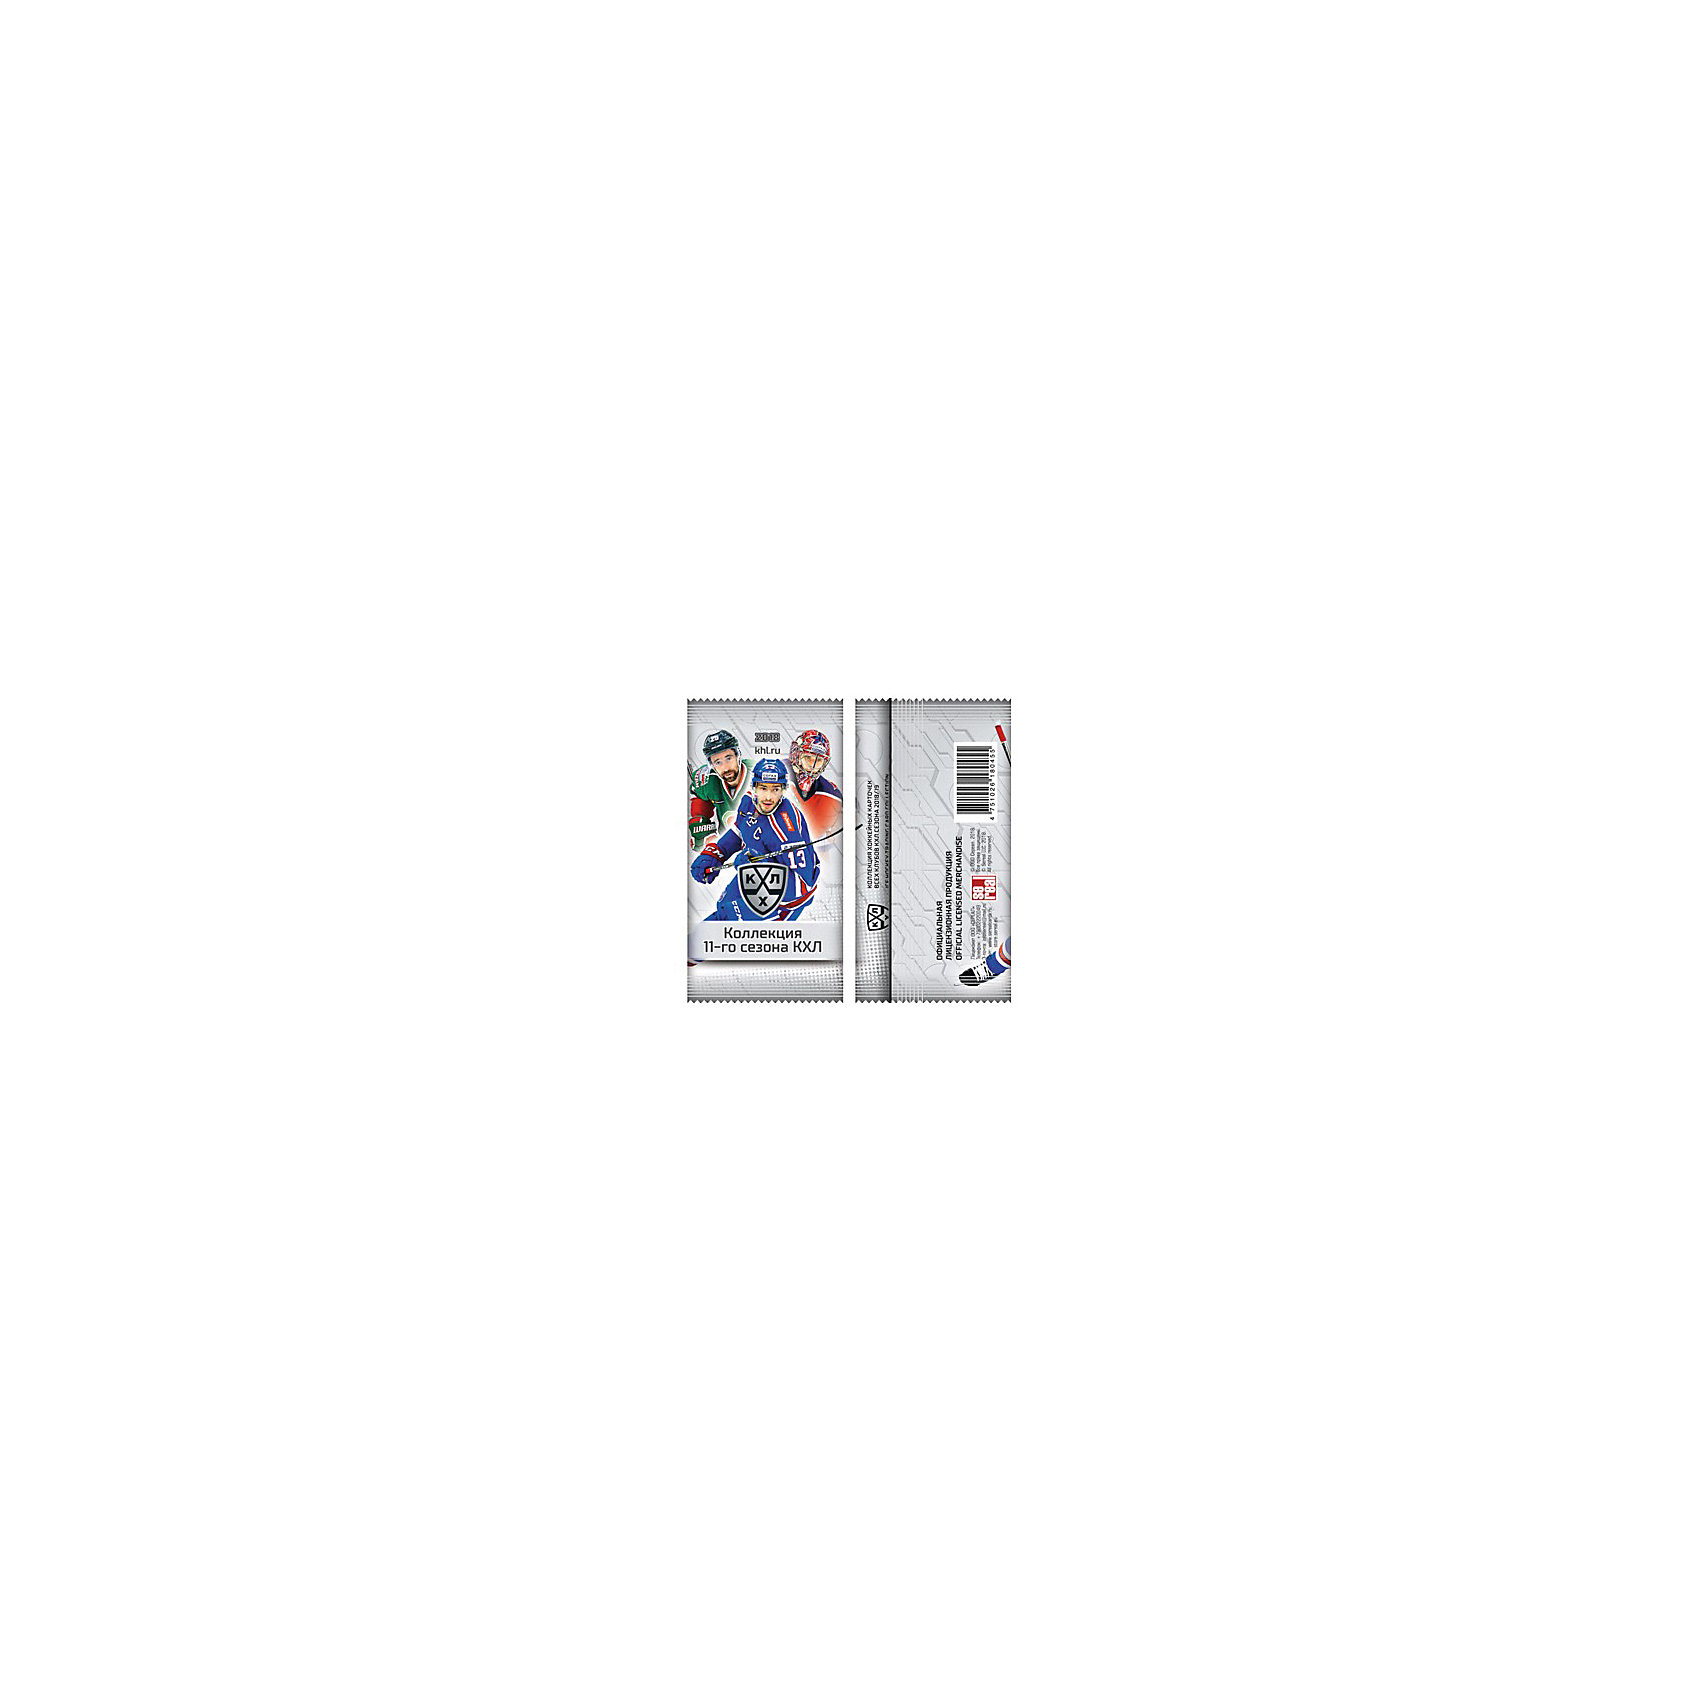 фото Хоккейные карточки Panini КХЛ коллекция 11го сезона 2018/19